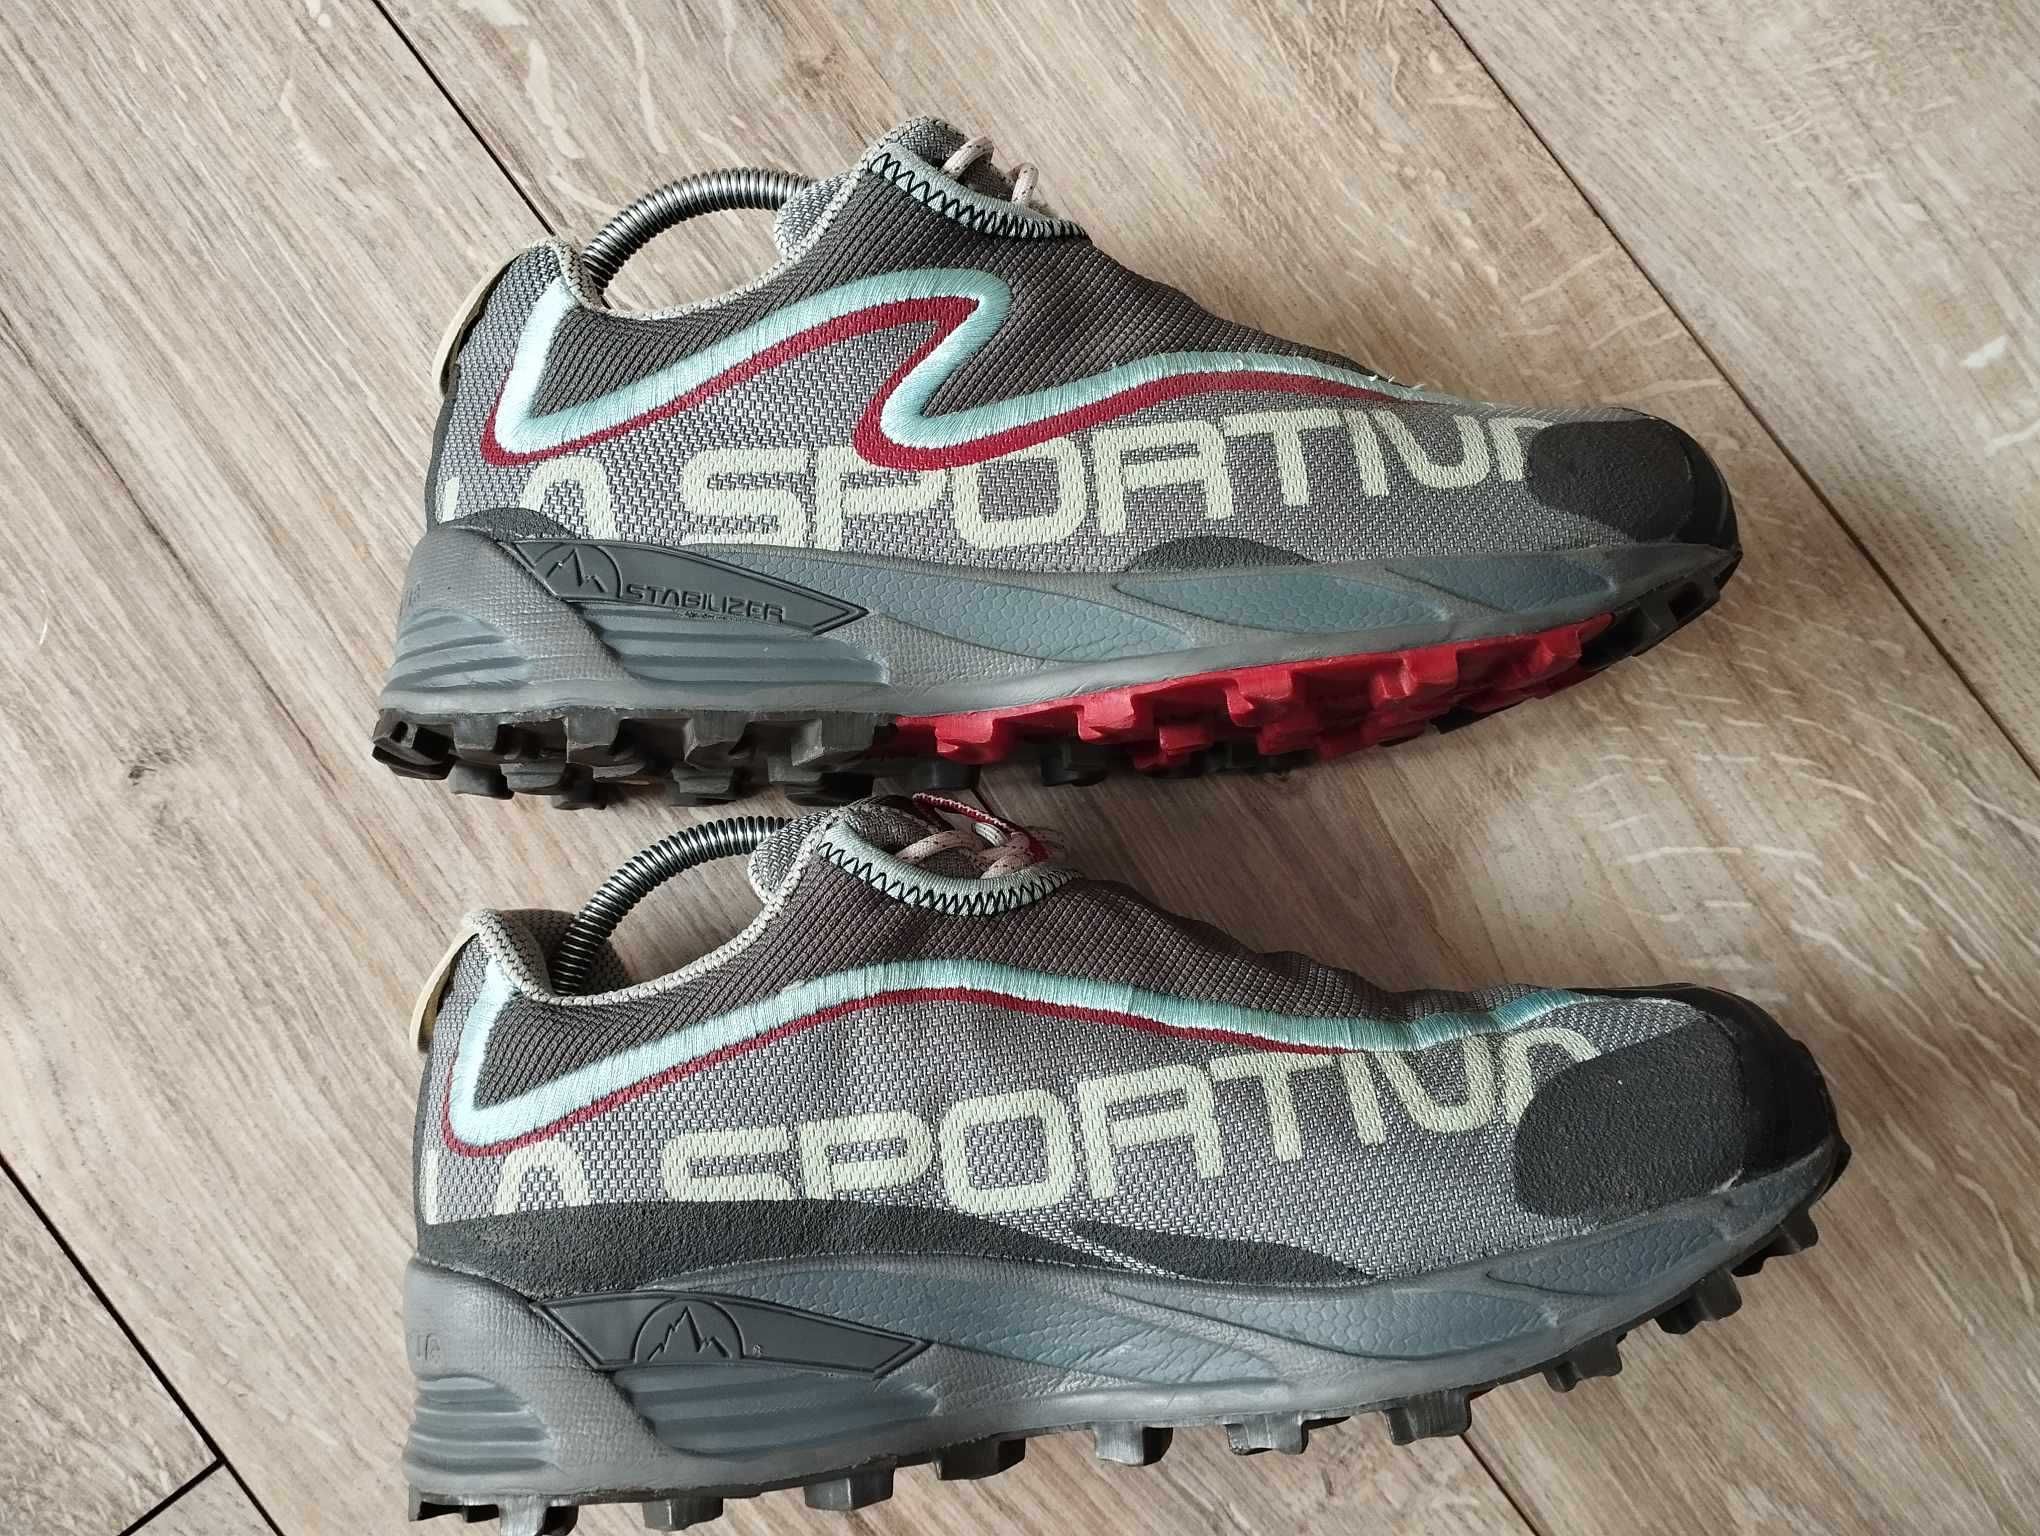 La Sportiva C-Lite buty trialowe trekkingowe size 37??